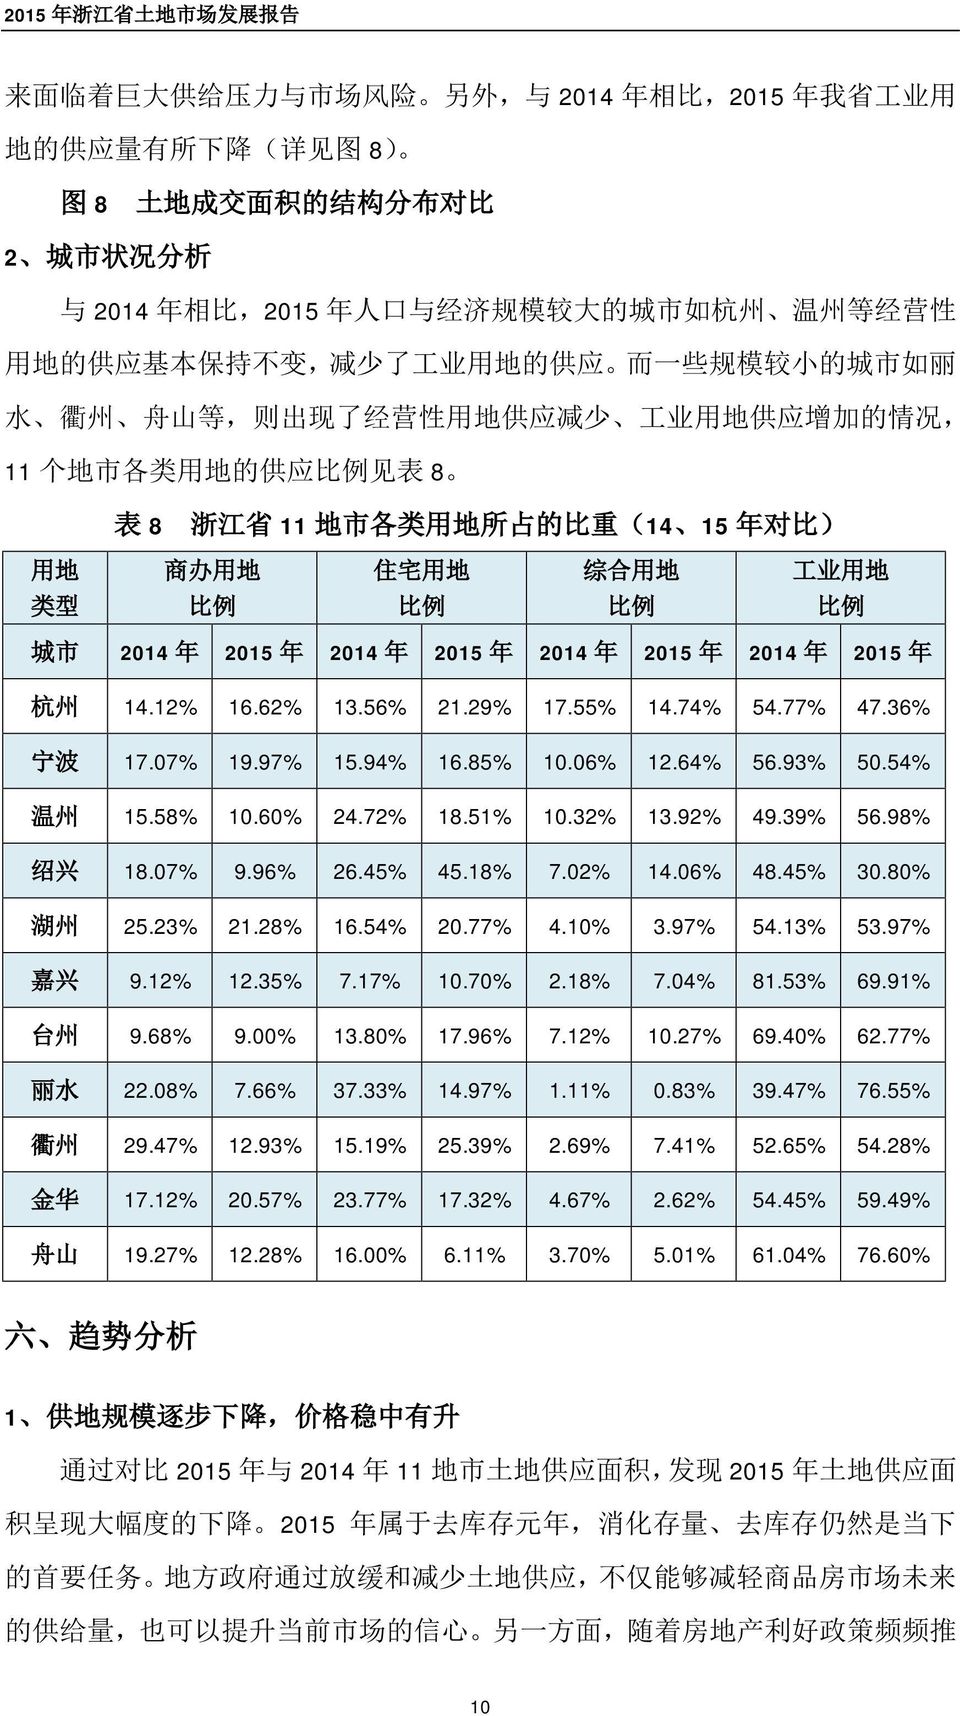 地 住 宅 用 地 综 合 用 地 工 业 用 地 类 型 比 例 比 例 比 例 比 例 城 市 2014 年 2015 年 2014 年 2015 年 2014 年 2015 年 2014 年 2015 年 杭 州 14.12% 16.62% 13.56% 21.29% 17.55% 14.74% 54.77% 47.36% 宁 波 17.07% 19.97% 15.94% 16.